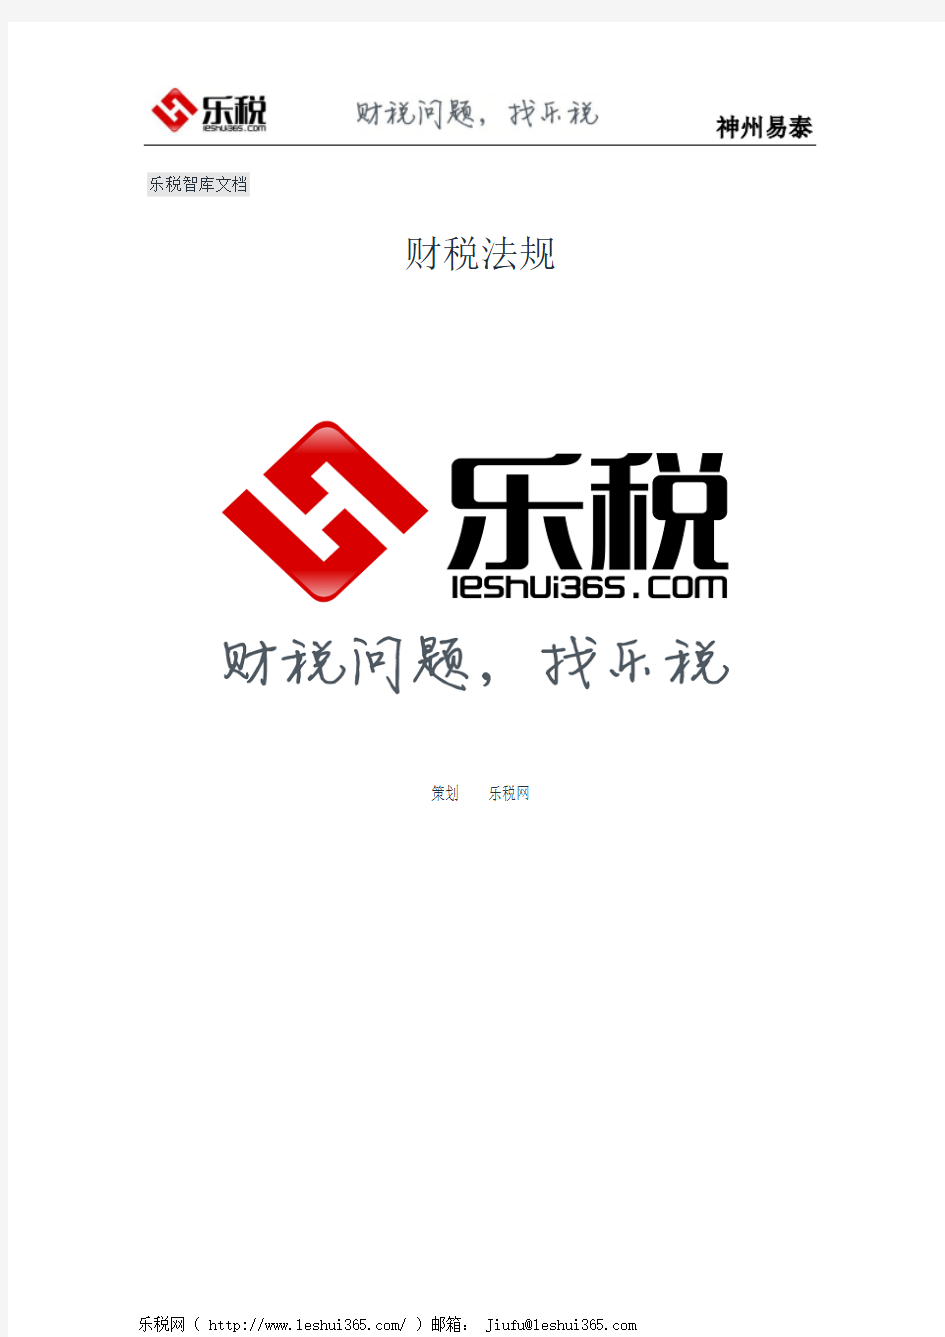 陕西省地方税务局关于个人所得税网上查询和完税证明自助打印有关